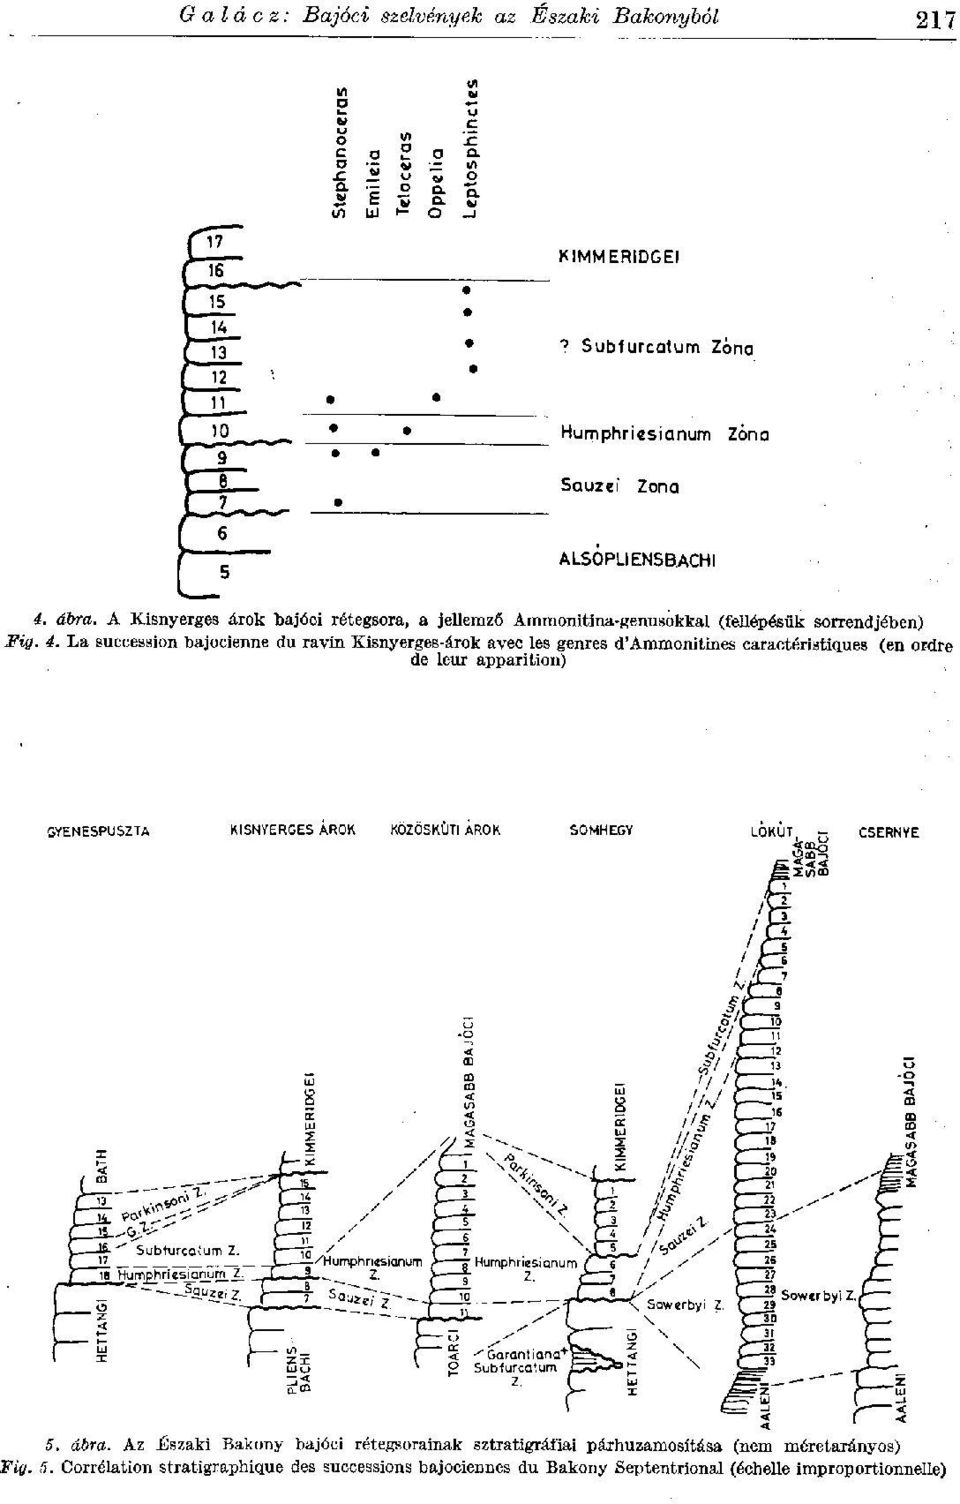 La succession bajocienne du ravin Kisnyerges-árok avec les genres d'ammonitines caractéristiques (en ordre de leur apparition)